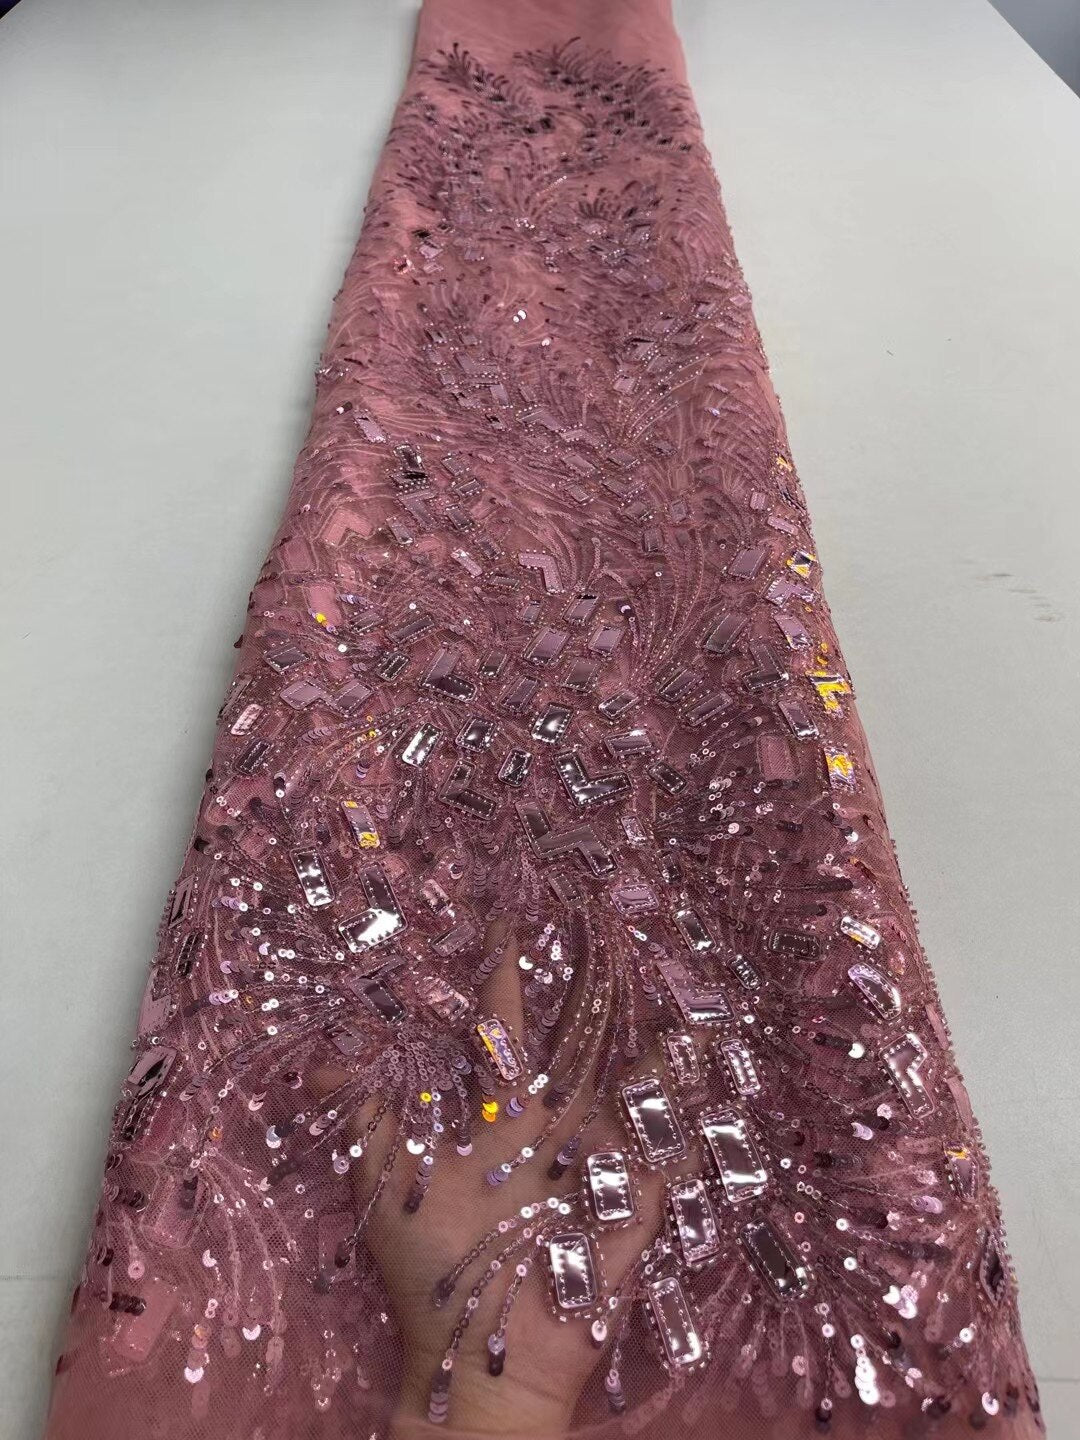 5 YARD / 9 COLORI / Tessuto Samuel per abiti da cerimonia nuziale in pizzo scintillante con ricami di perline e paillettes glitterate